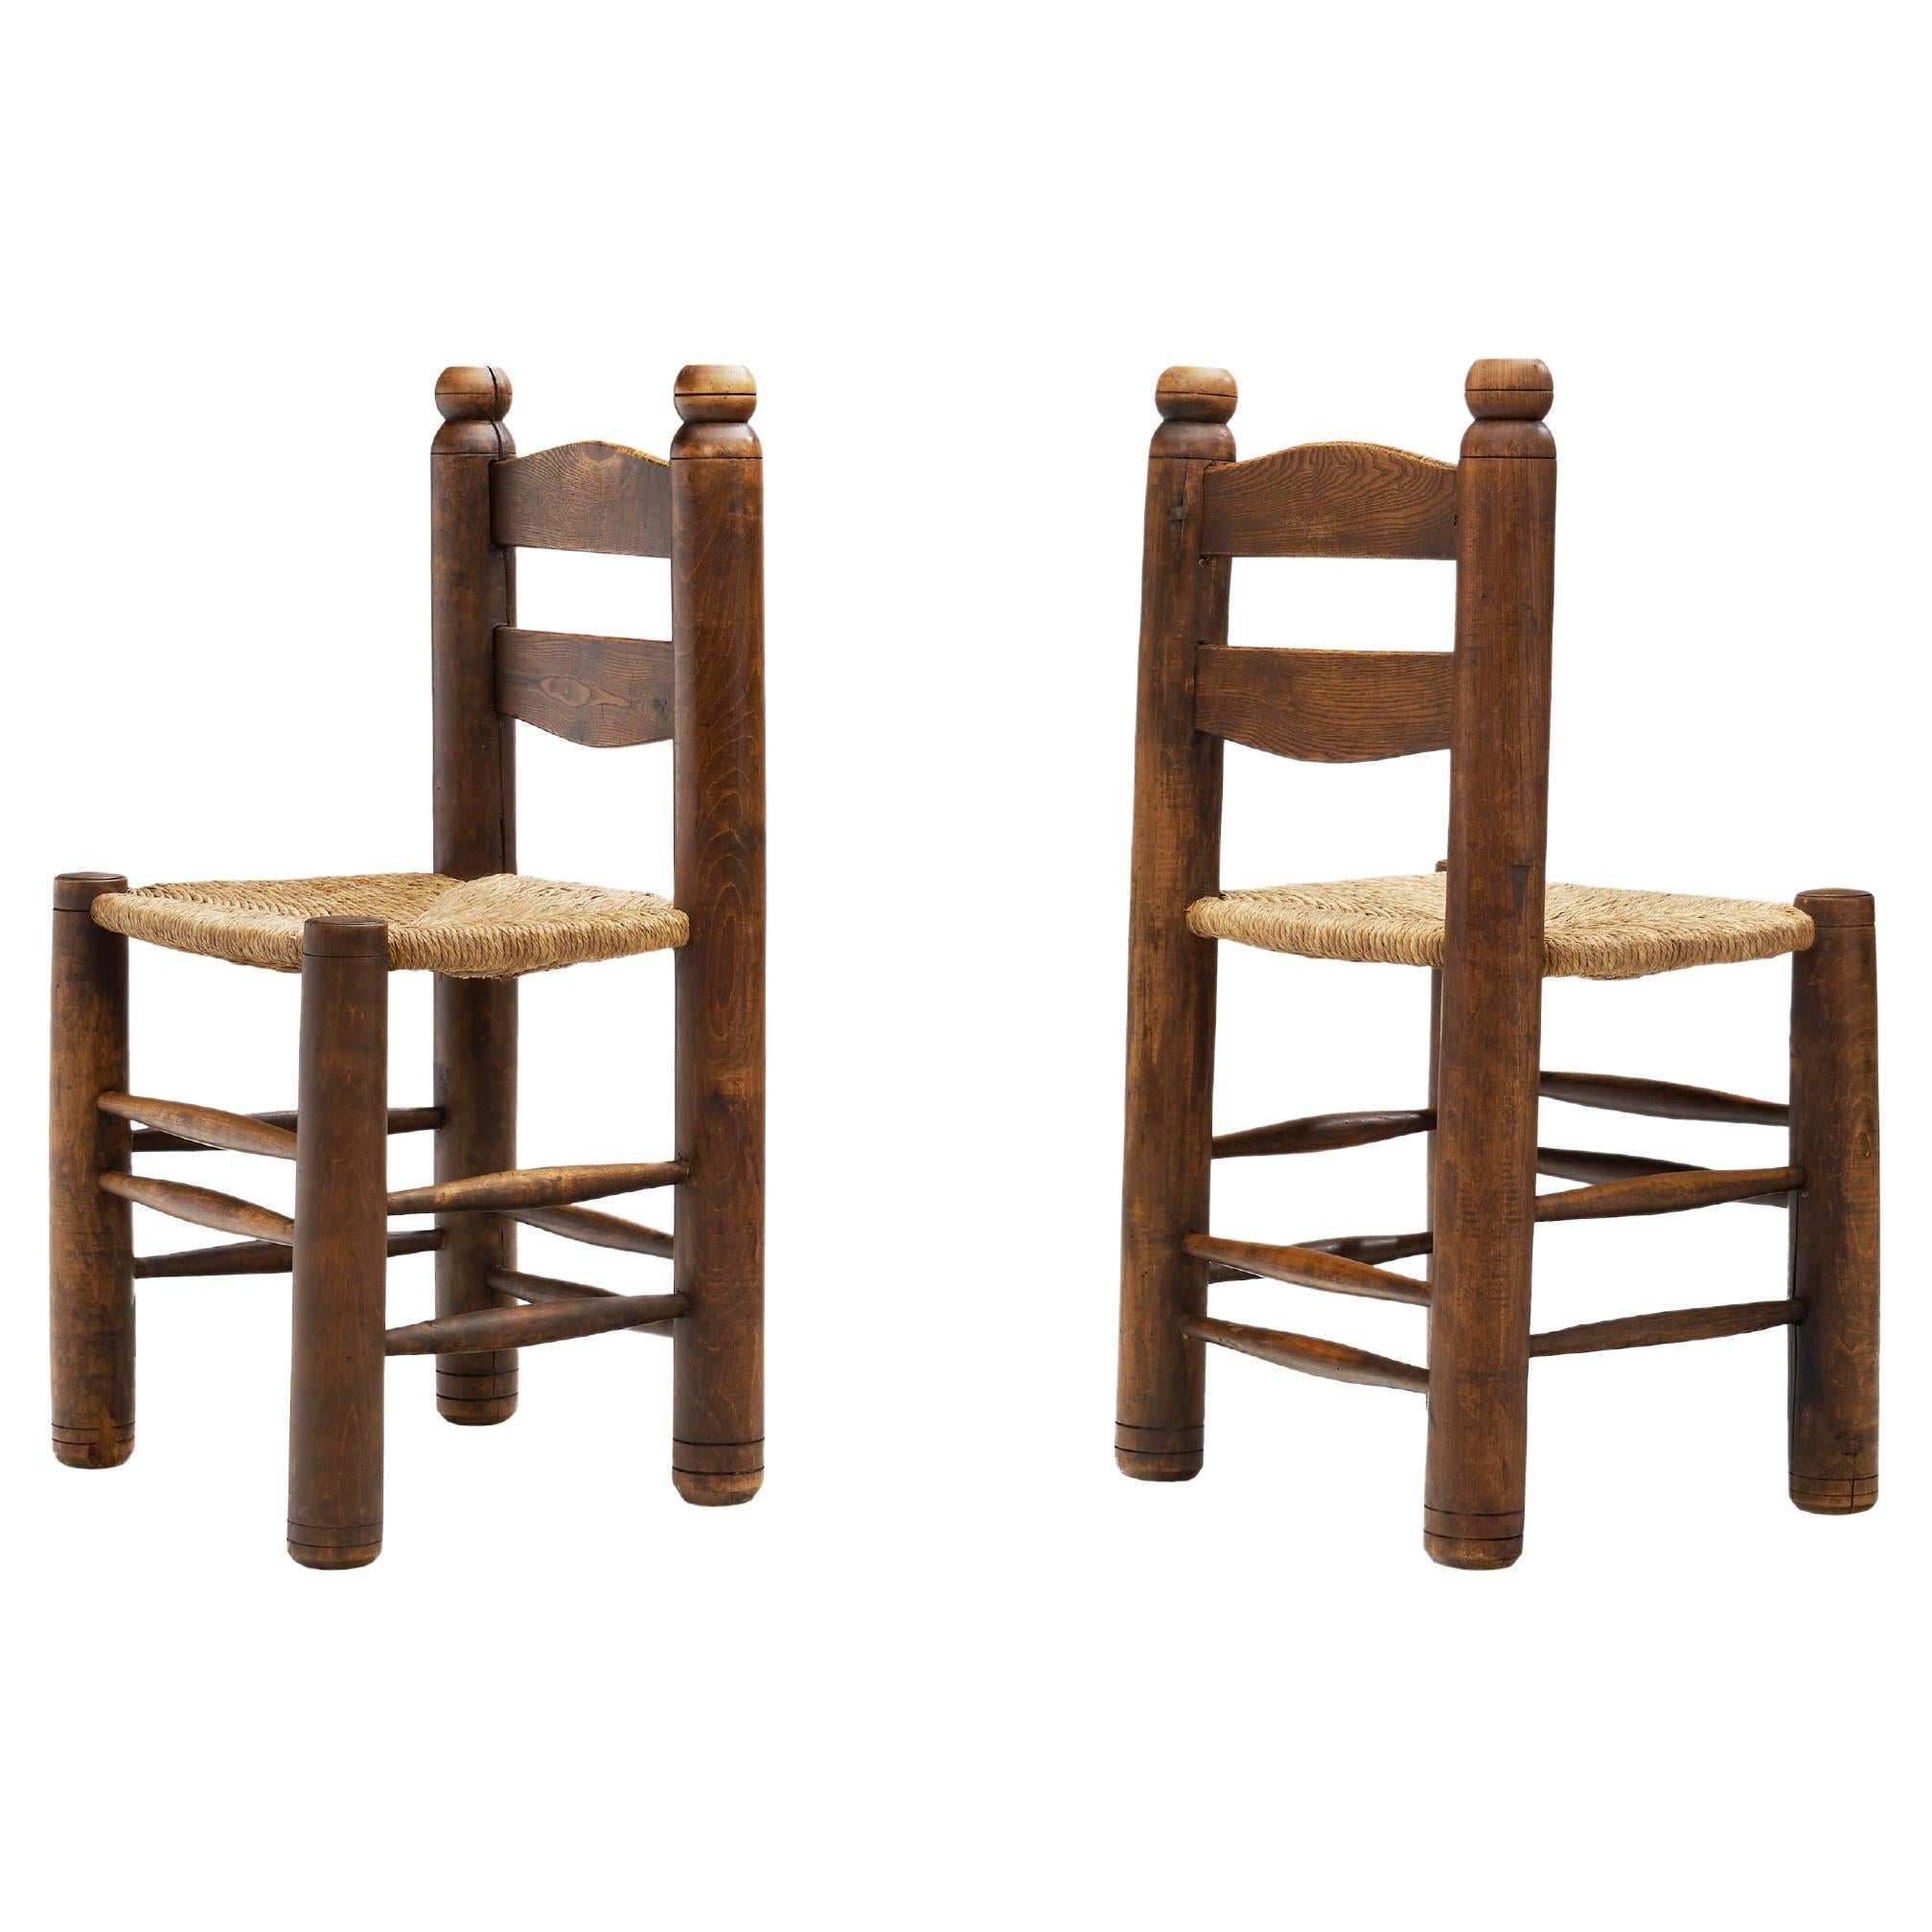 Holzgedrechselte Stühle mit geflochtenen Binsen-Sitzen, Europa um 1940